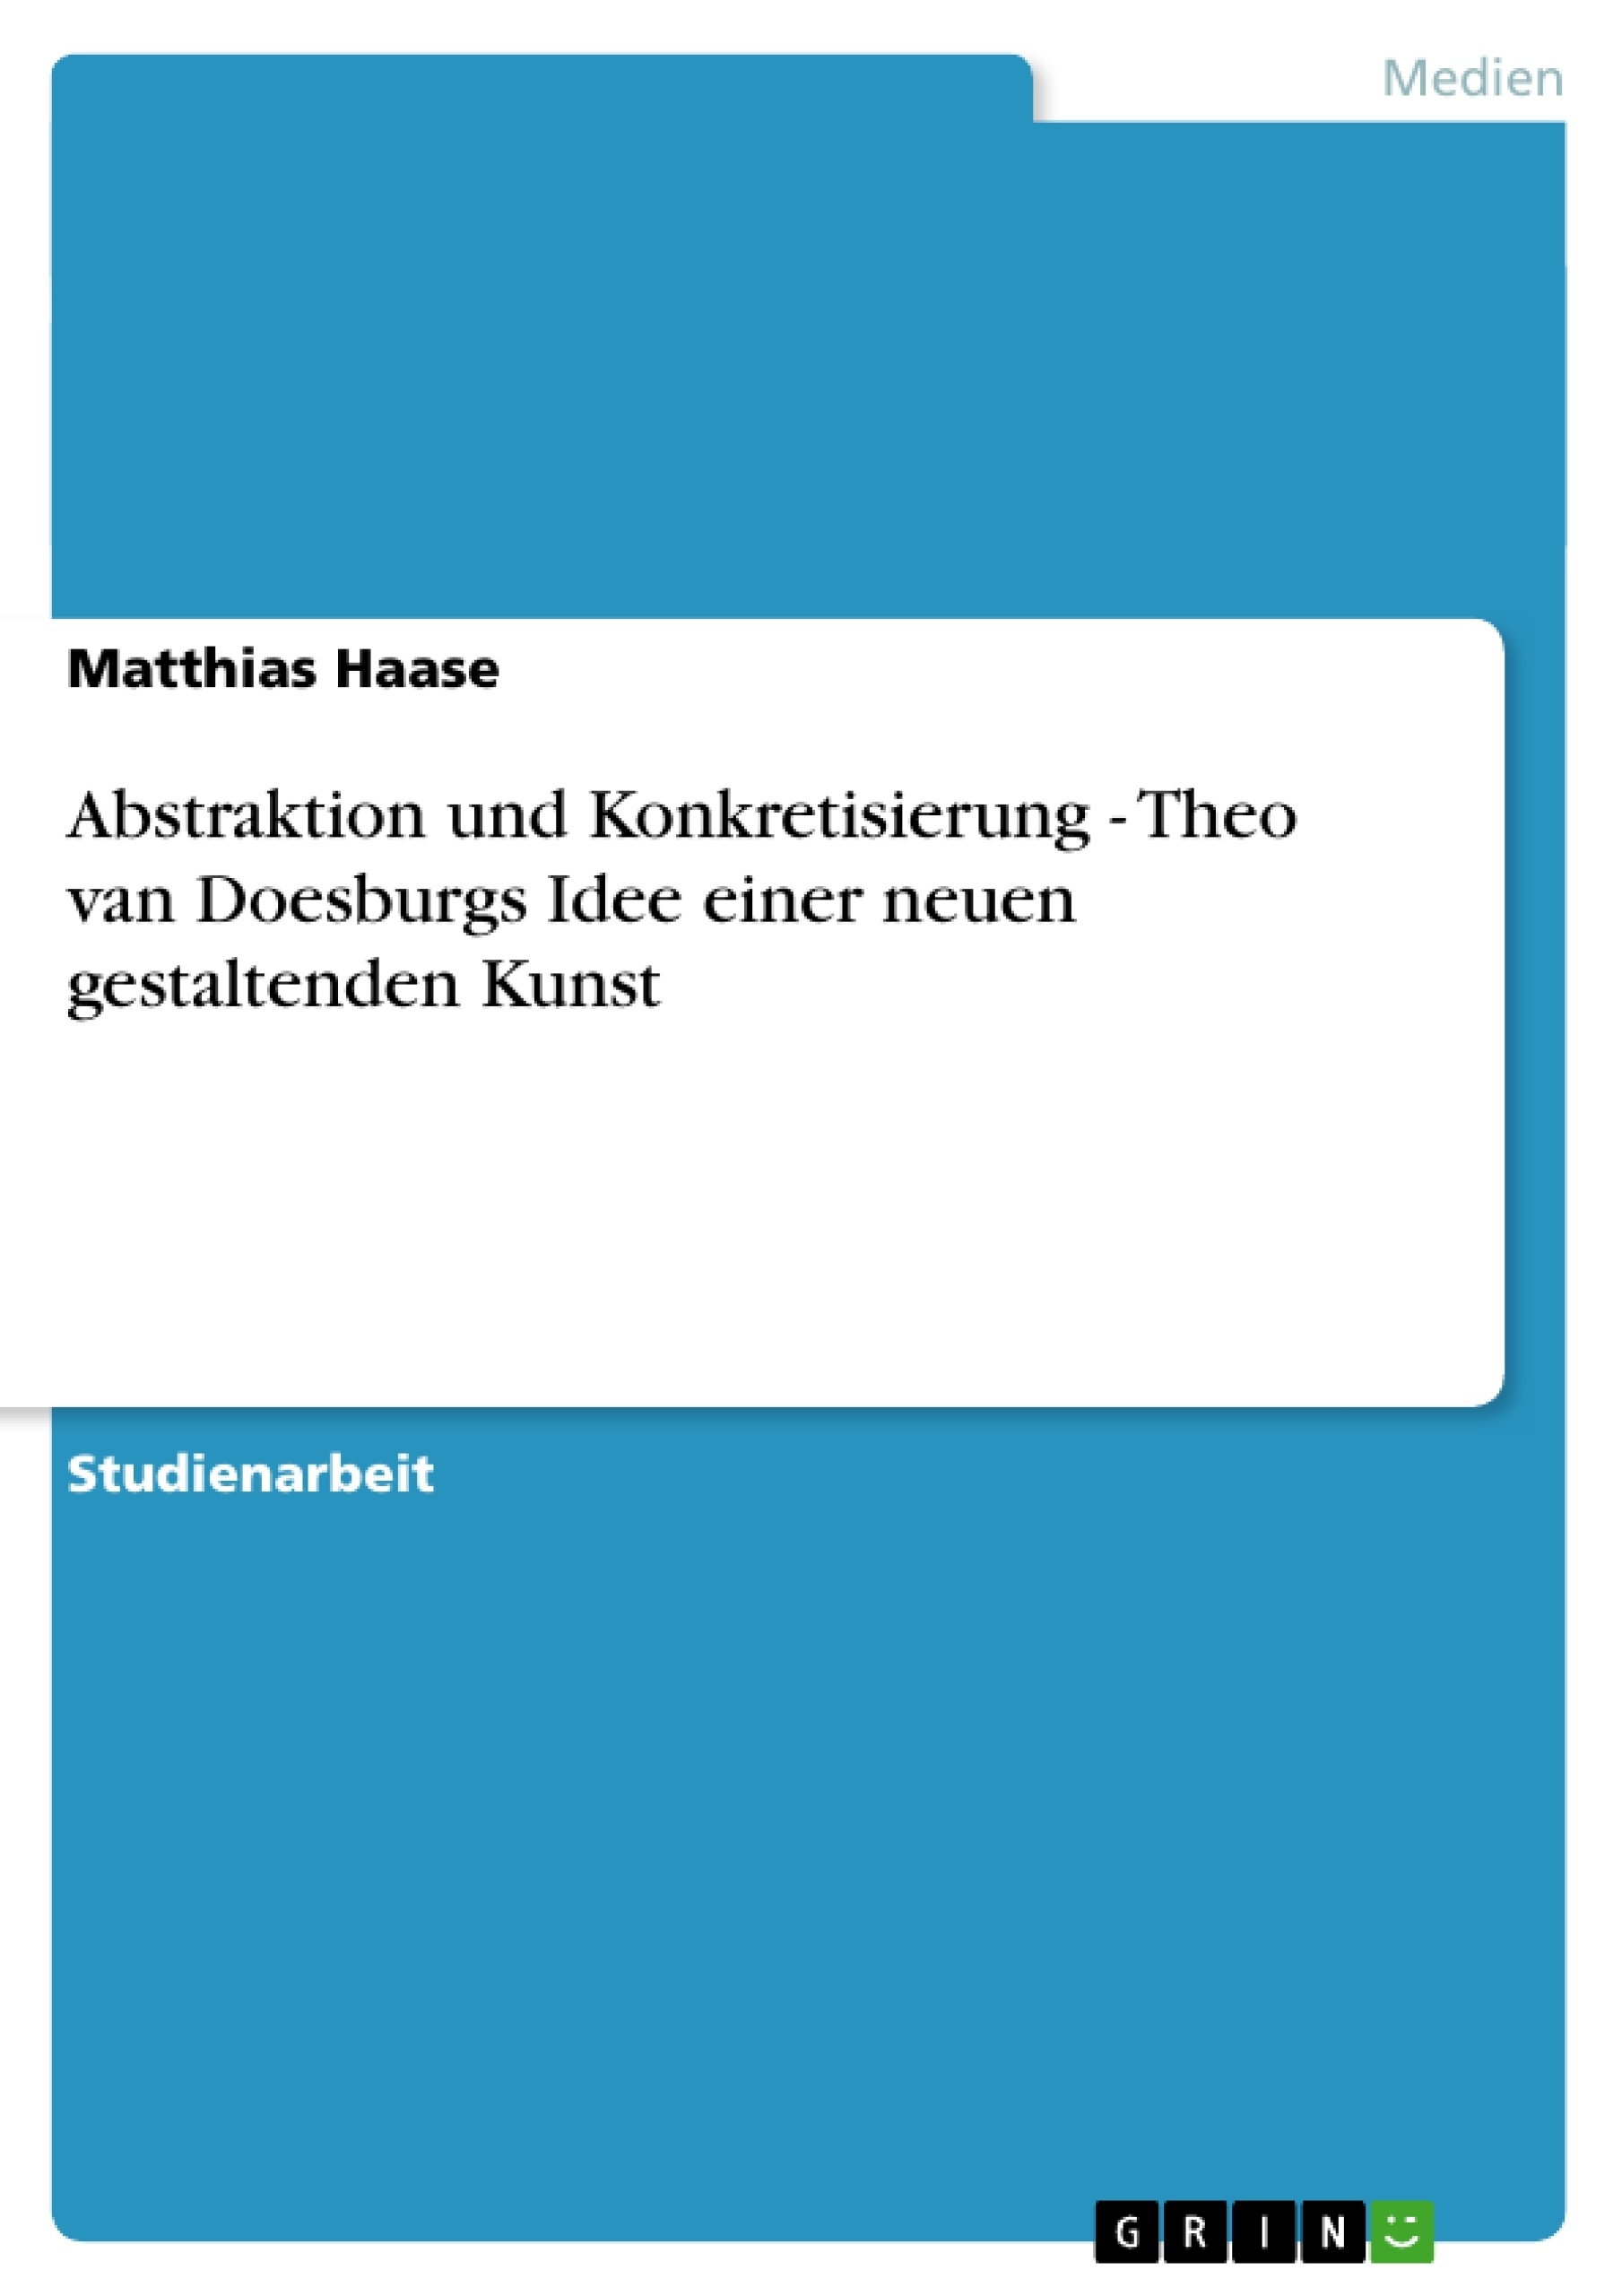 Title: Abstraktion und Konkretisierung - Theo van Doesburgs Idee einer neuen gestaltenden Kunst